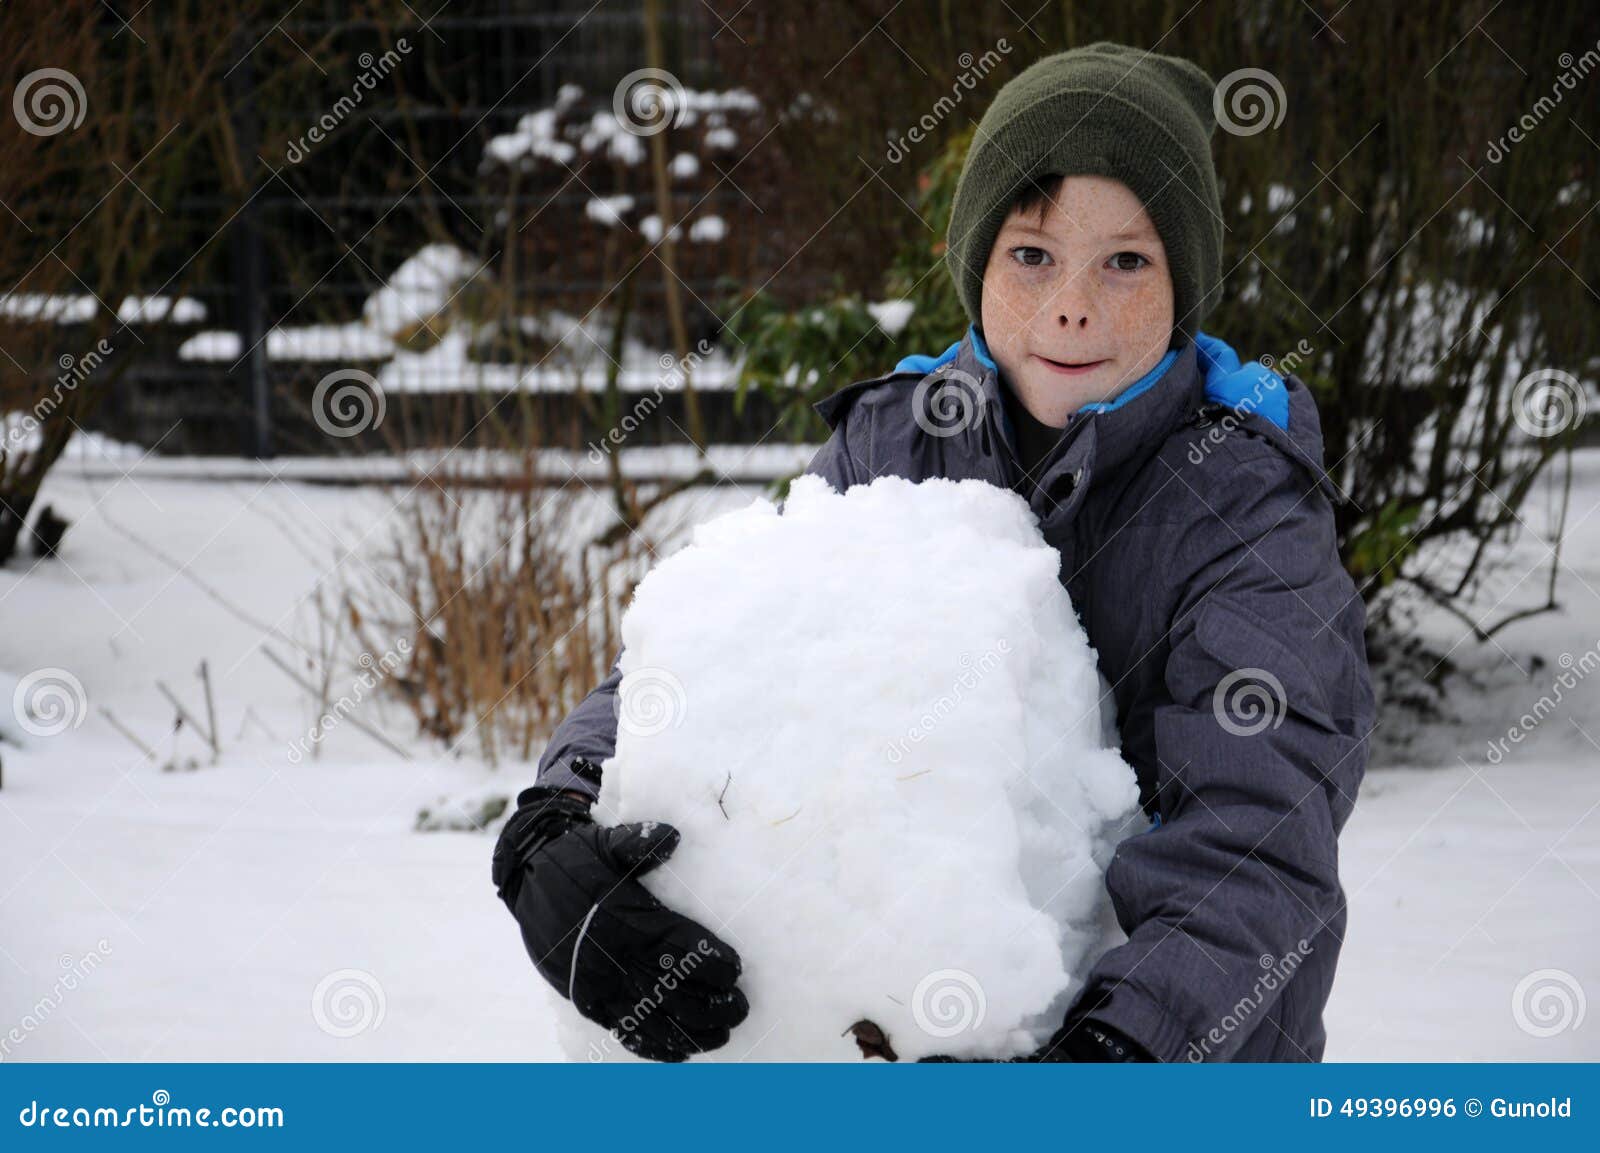 Life is cold. Мальчик в снегу. Мальчишка в снегу. Мальчик зимой показывает класс. Снег для мальчик катасия.